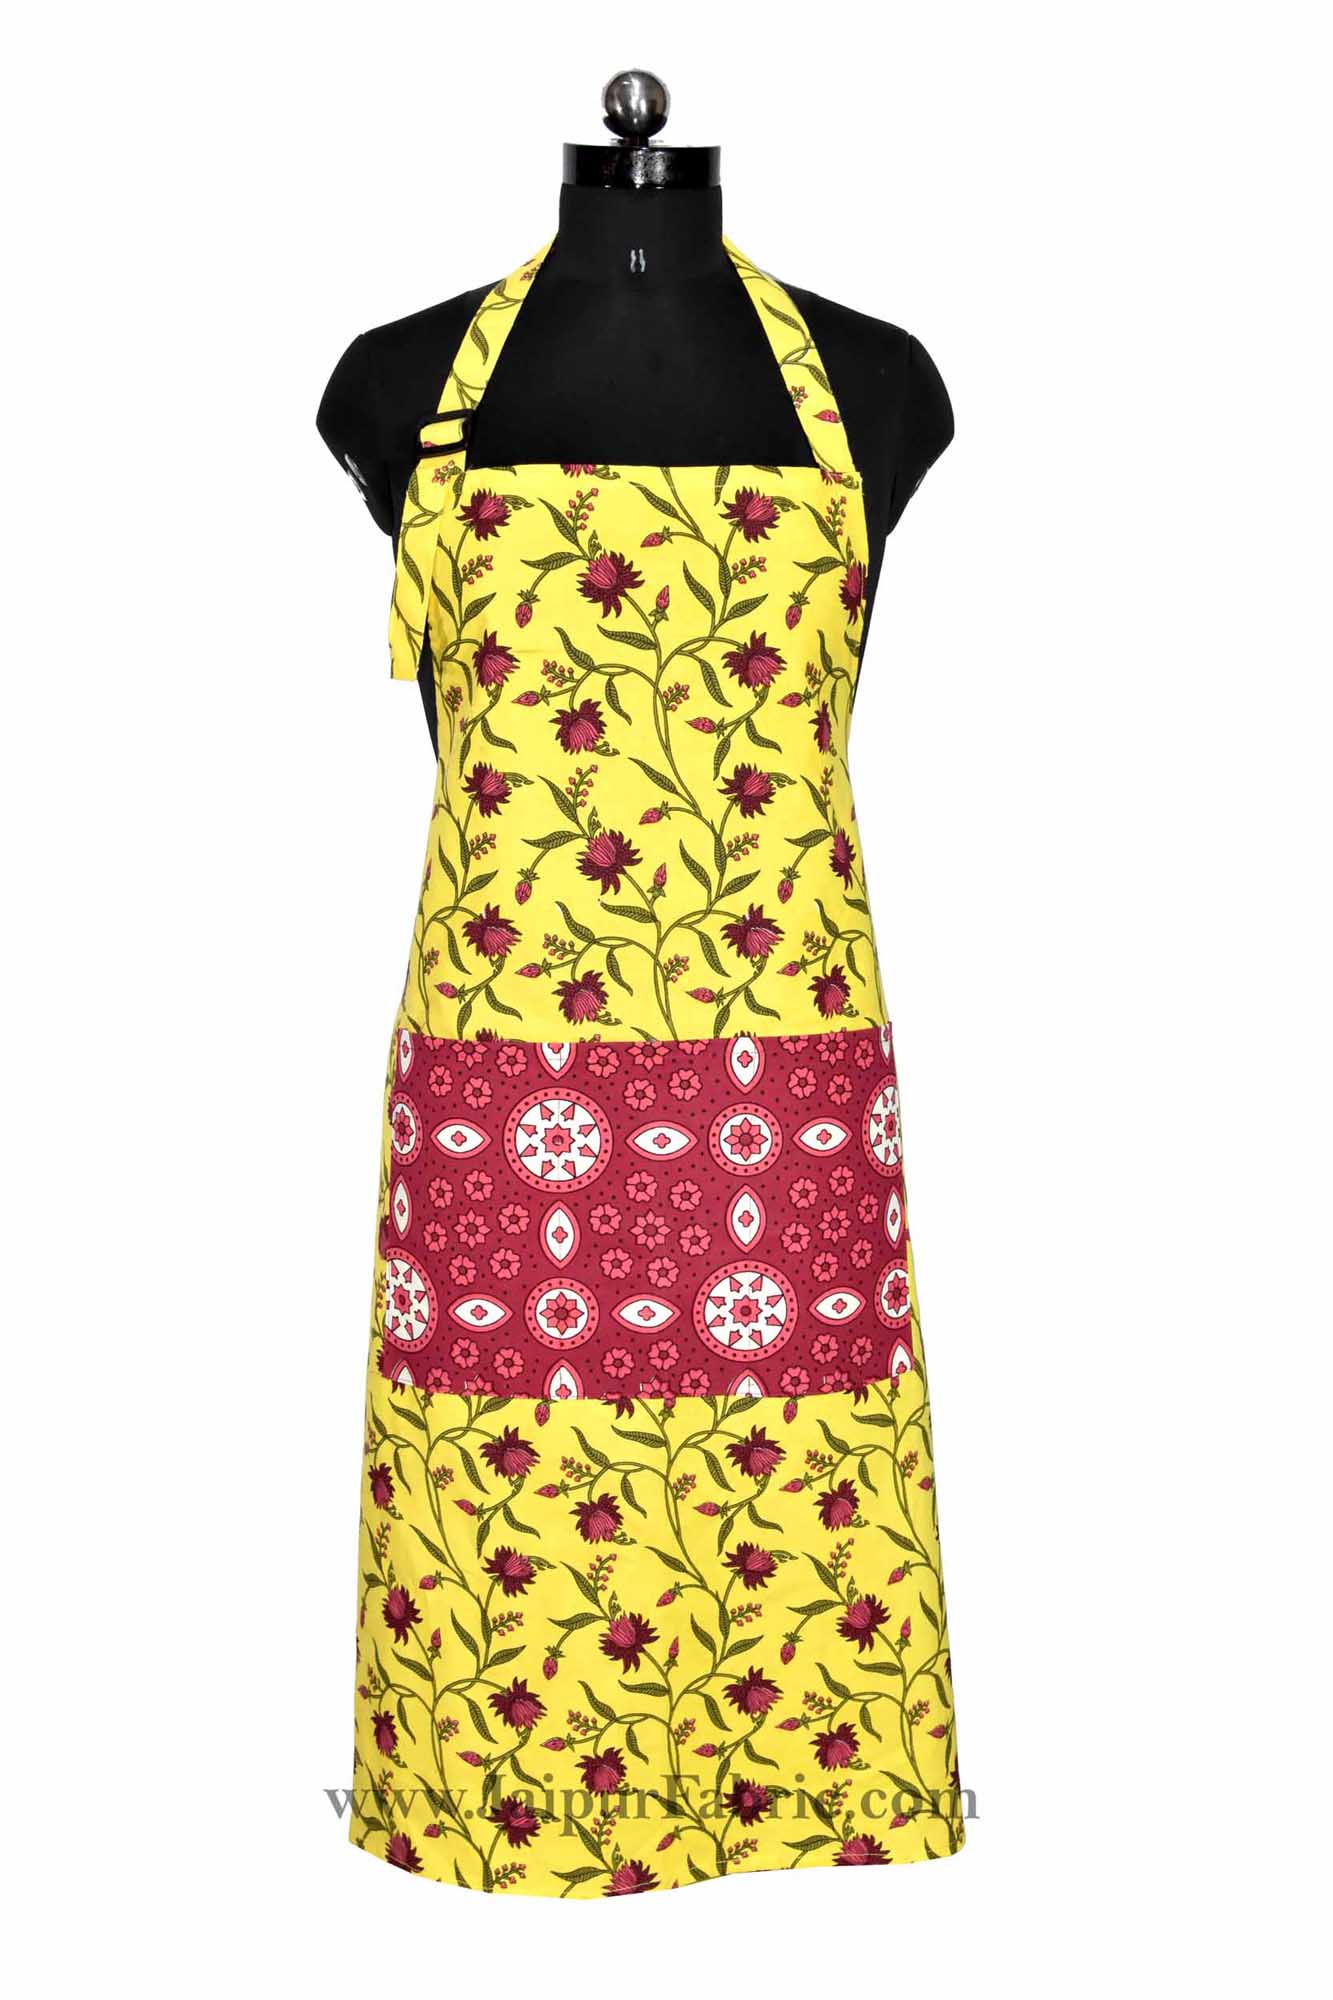 Floral Motif print yellow apron